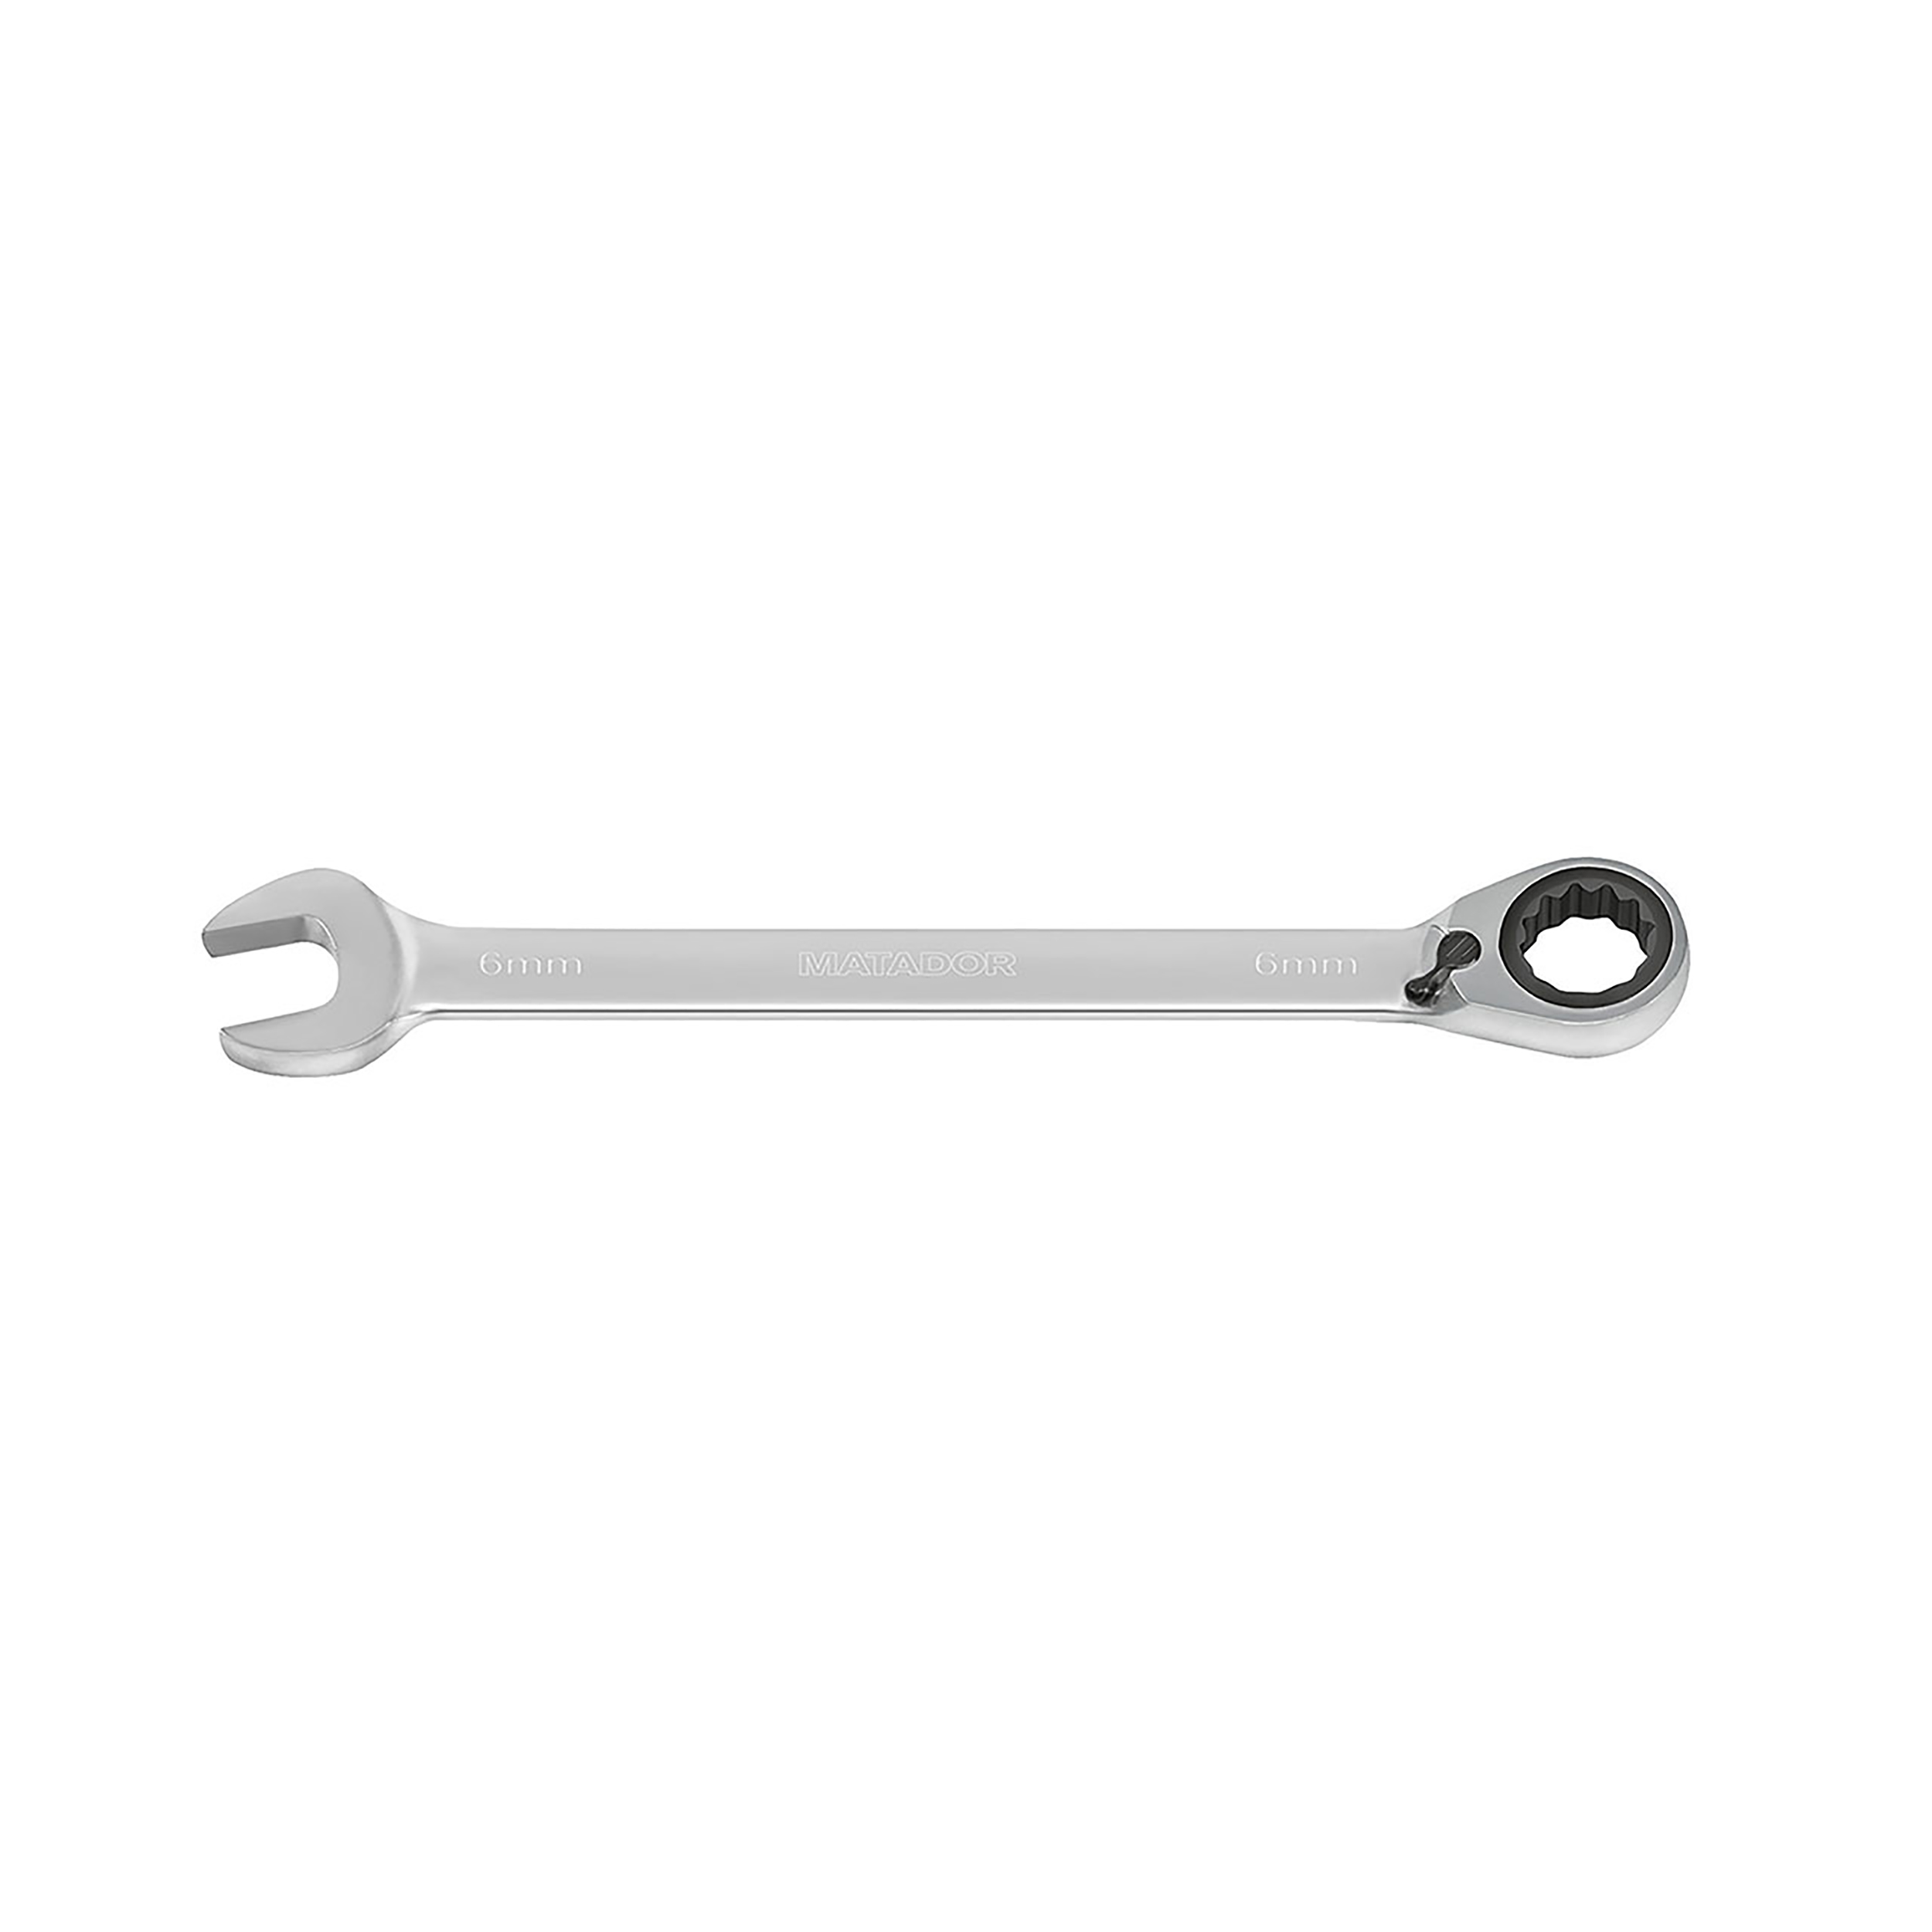 Knarren-Ringmaulschlüssel, m. Hebel, 30 mm, 953 Nm, MATADOR Art.-Code: 01890300